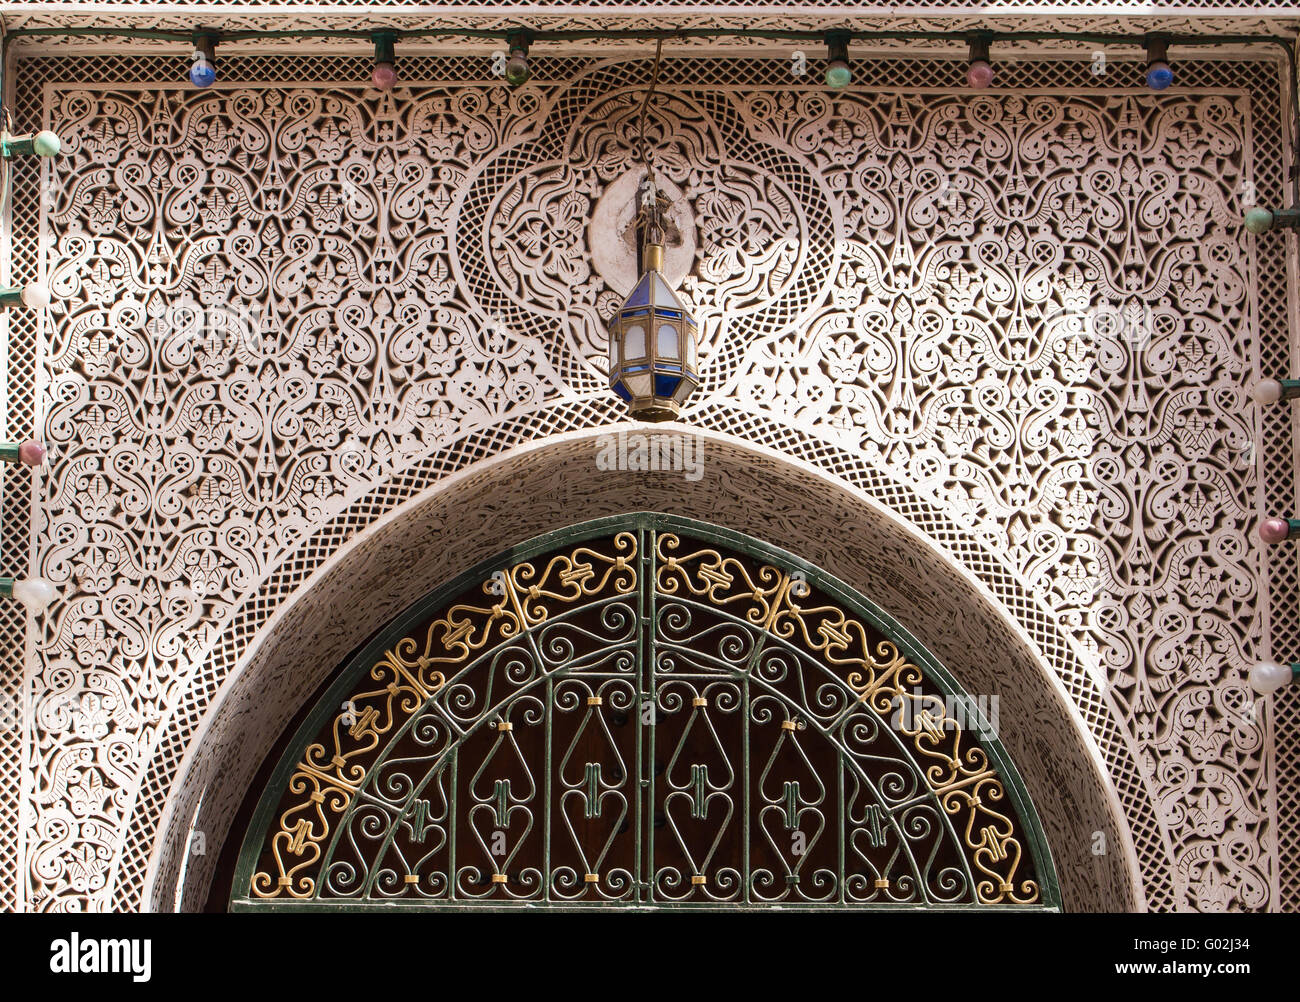 Reiche Dekoration des Tores in Marrakesch. Traditionelle Muster in einem Stein. Marrakesch, Marokko. Stockfoto